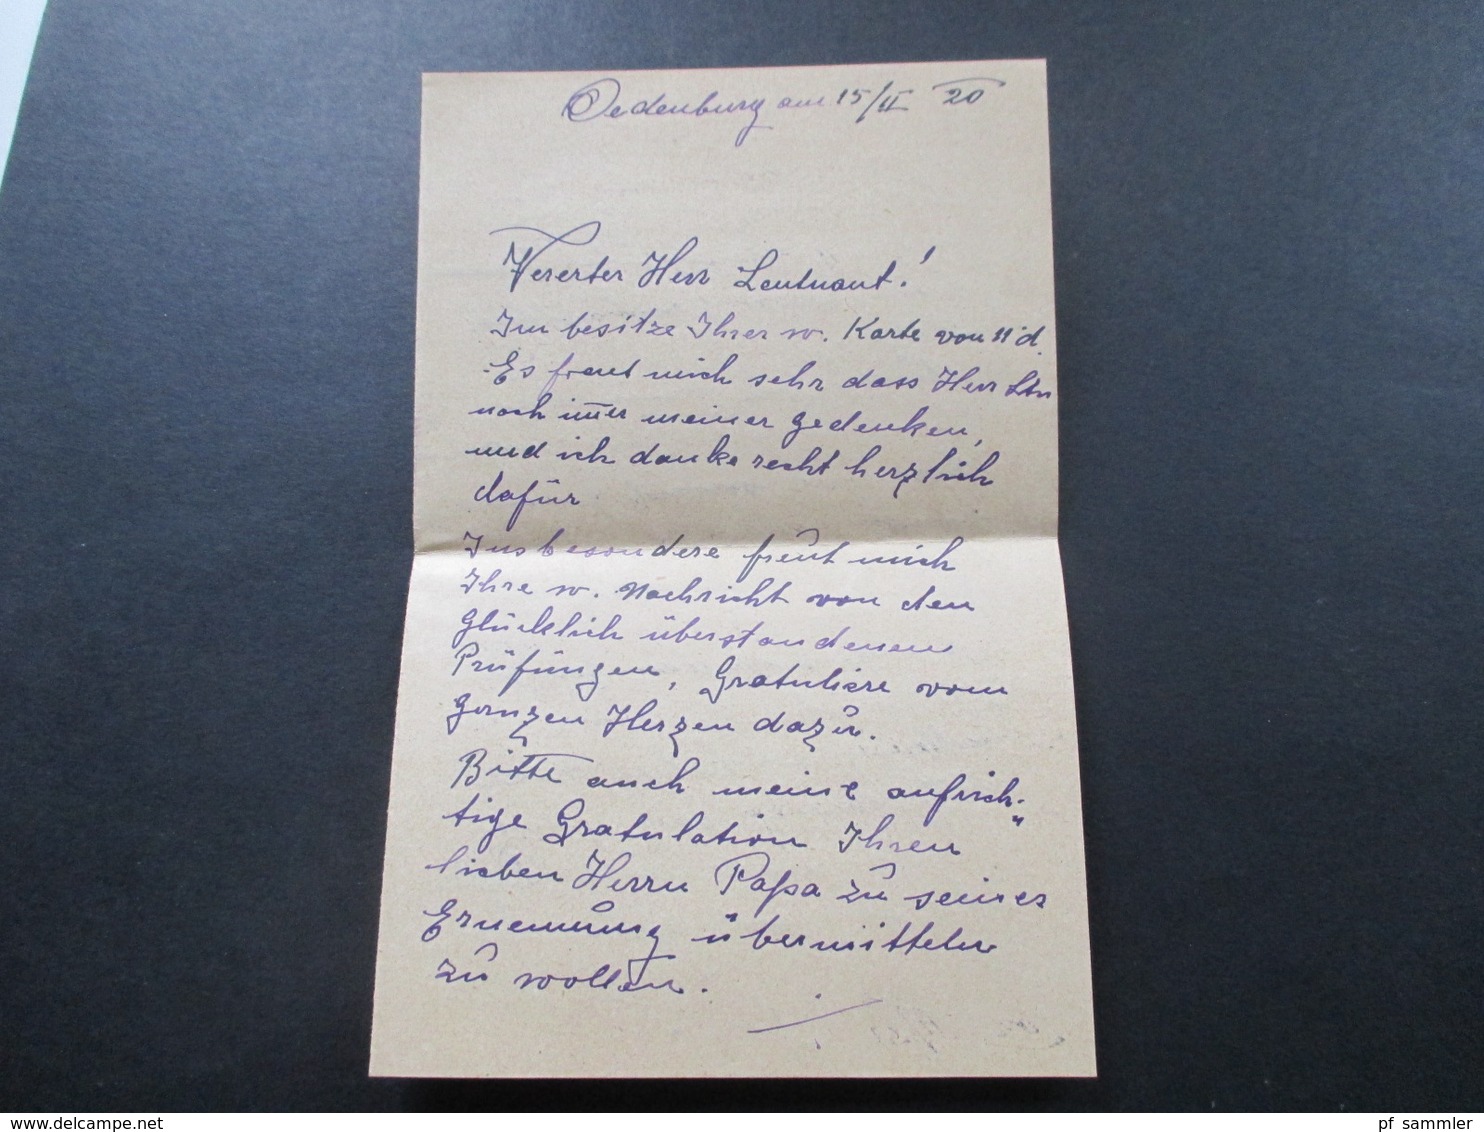 Ungarn 1920 Brief nach Wien gesendet mit Inhalt an den Ing. Ludwig Patsch. Cenzoralva / Zensurbeleg. Oedenburg